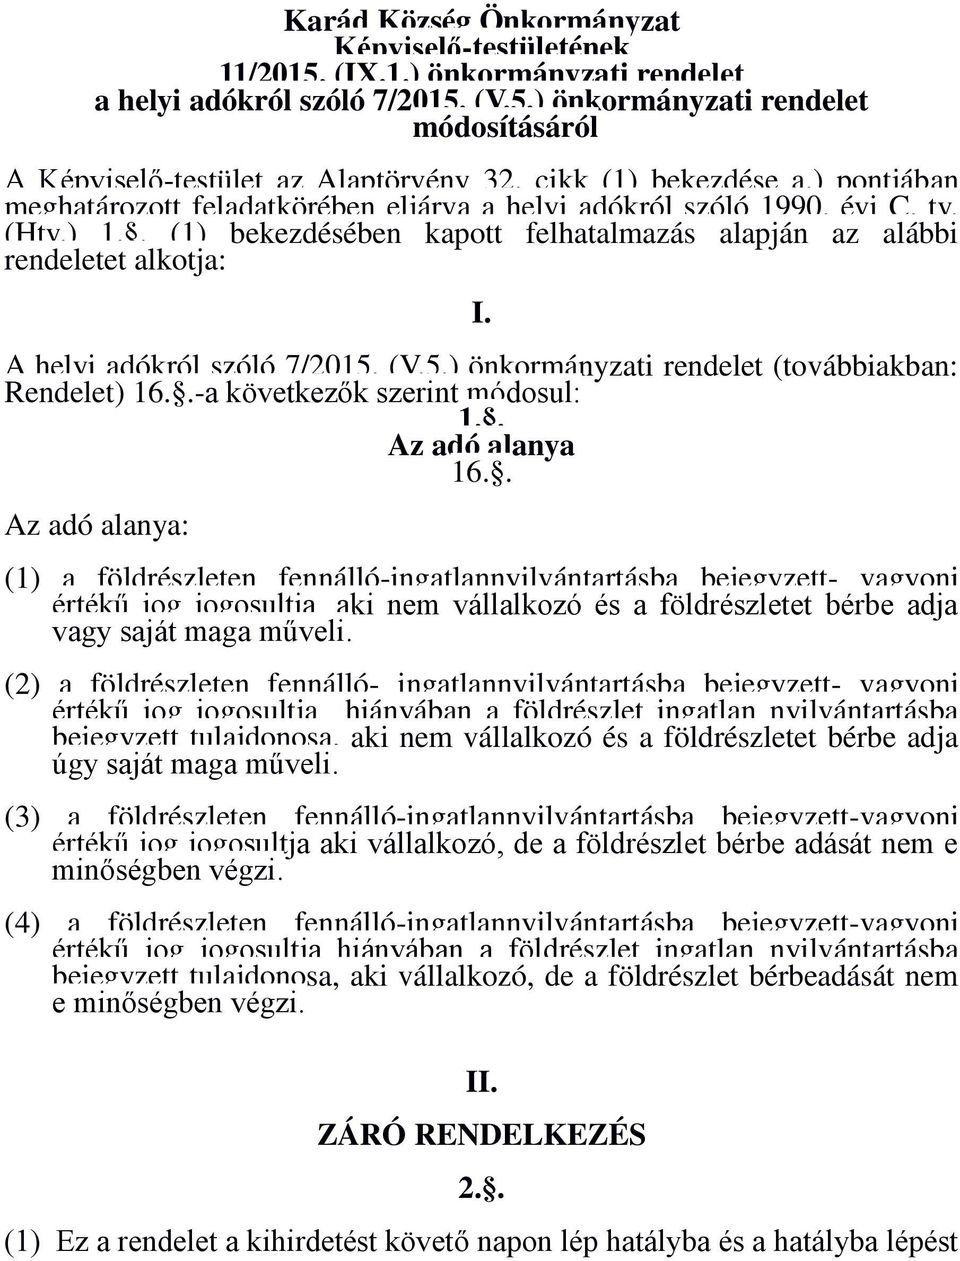 A helyi adókról szóló 7/2015. (V.5.) önkormányzati rendelet (továbbiakban: Rendelet) 16.